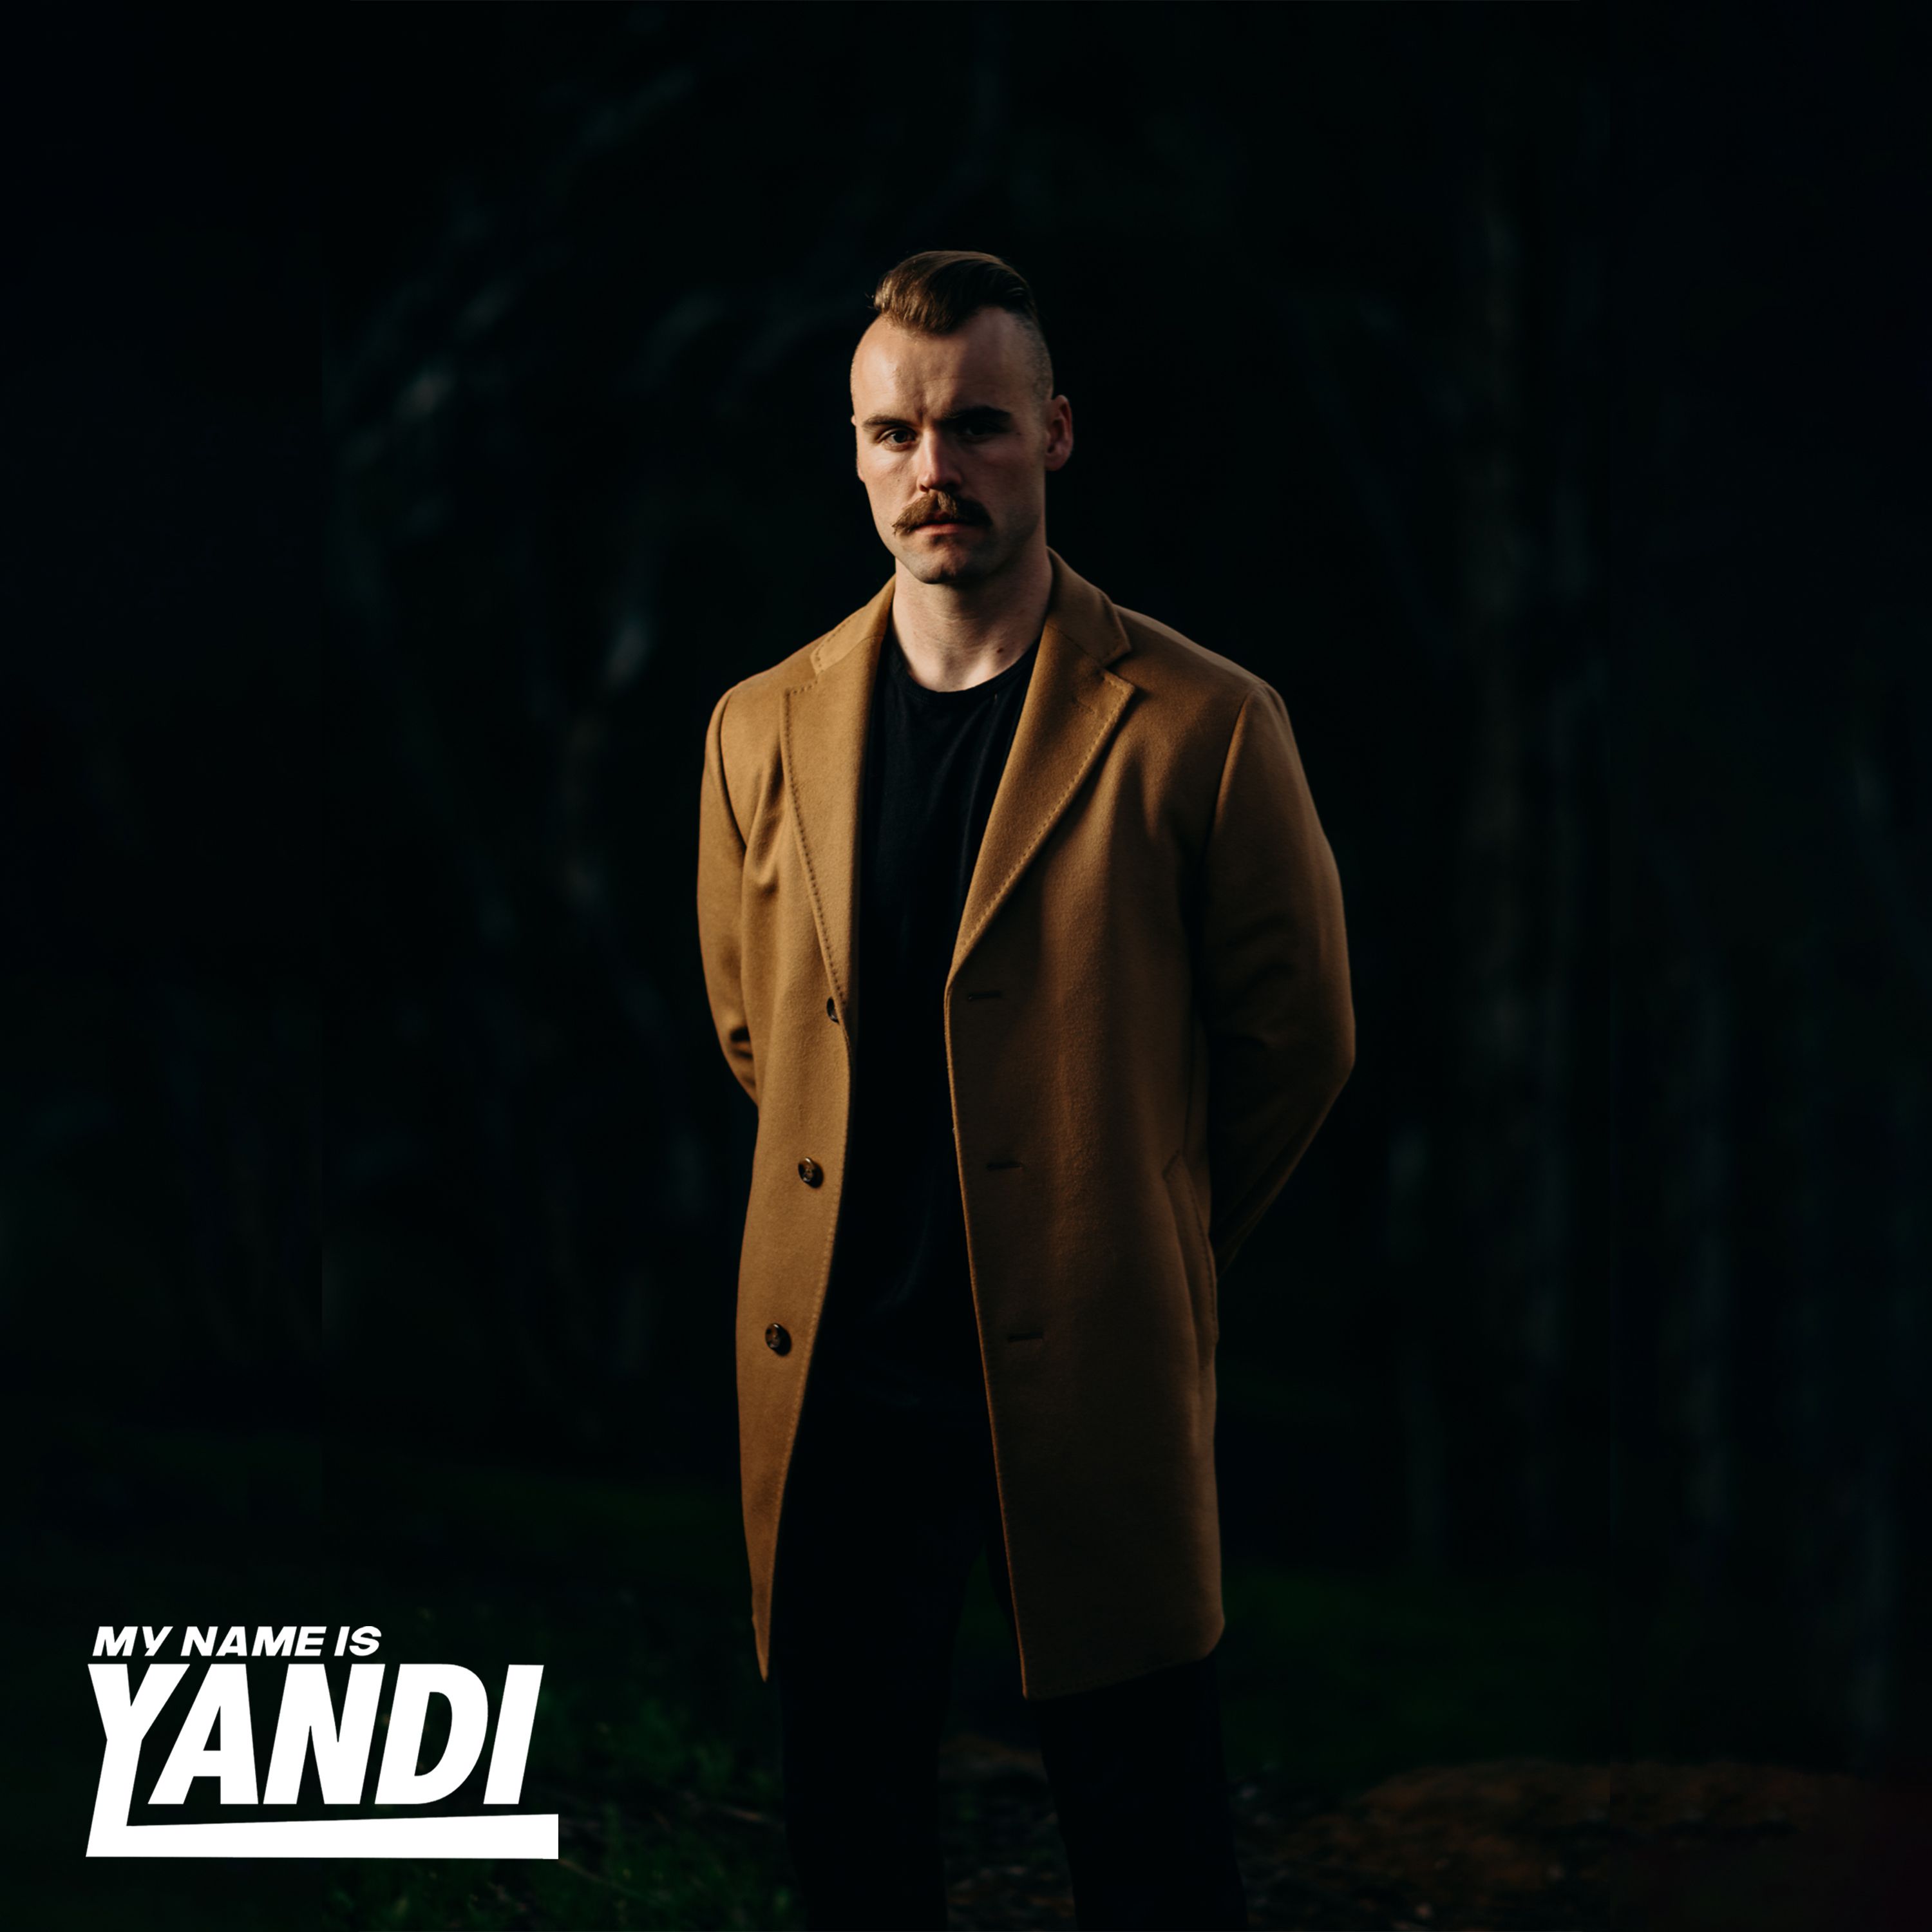 Yandi – “My Name is Yandi”